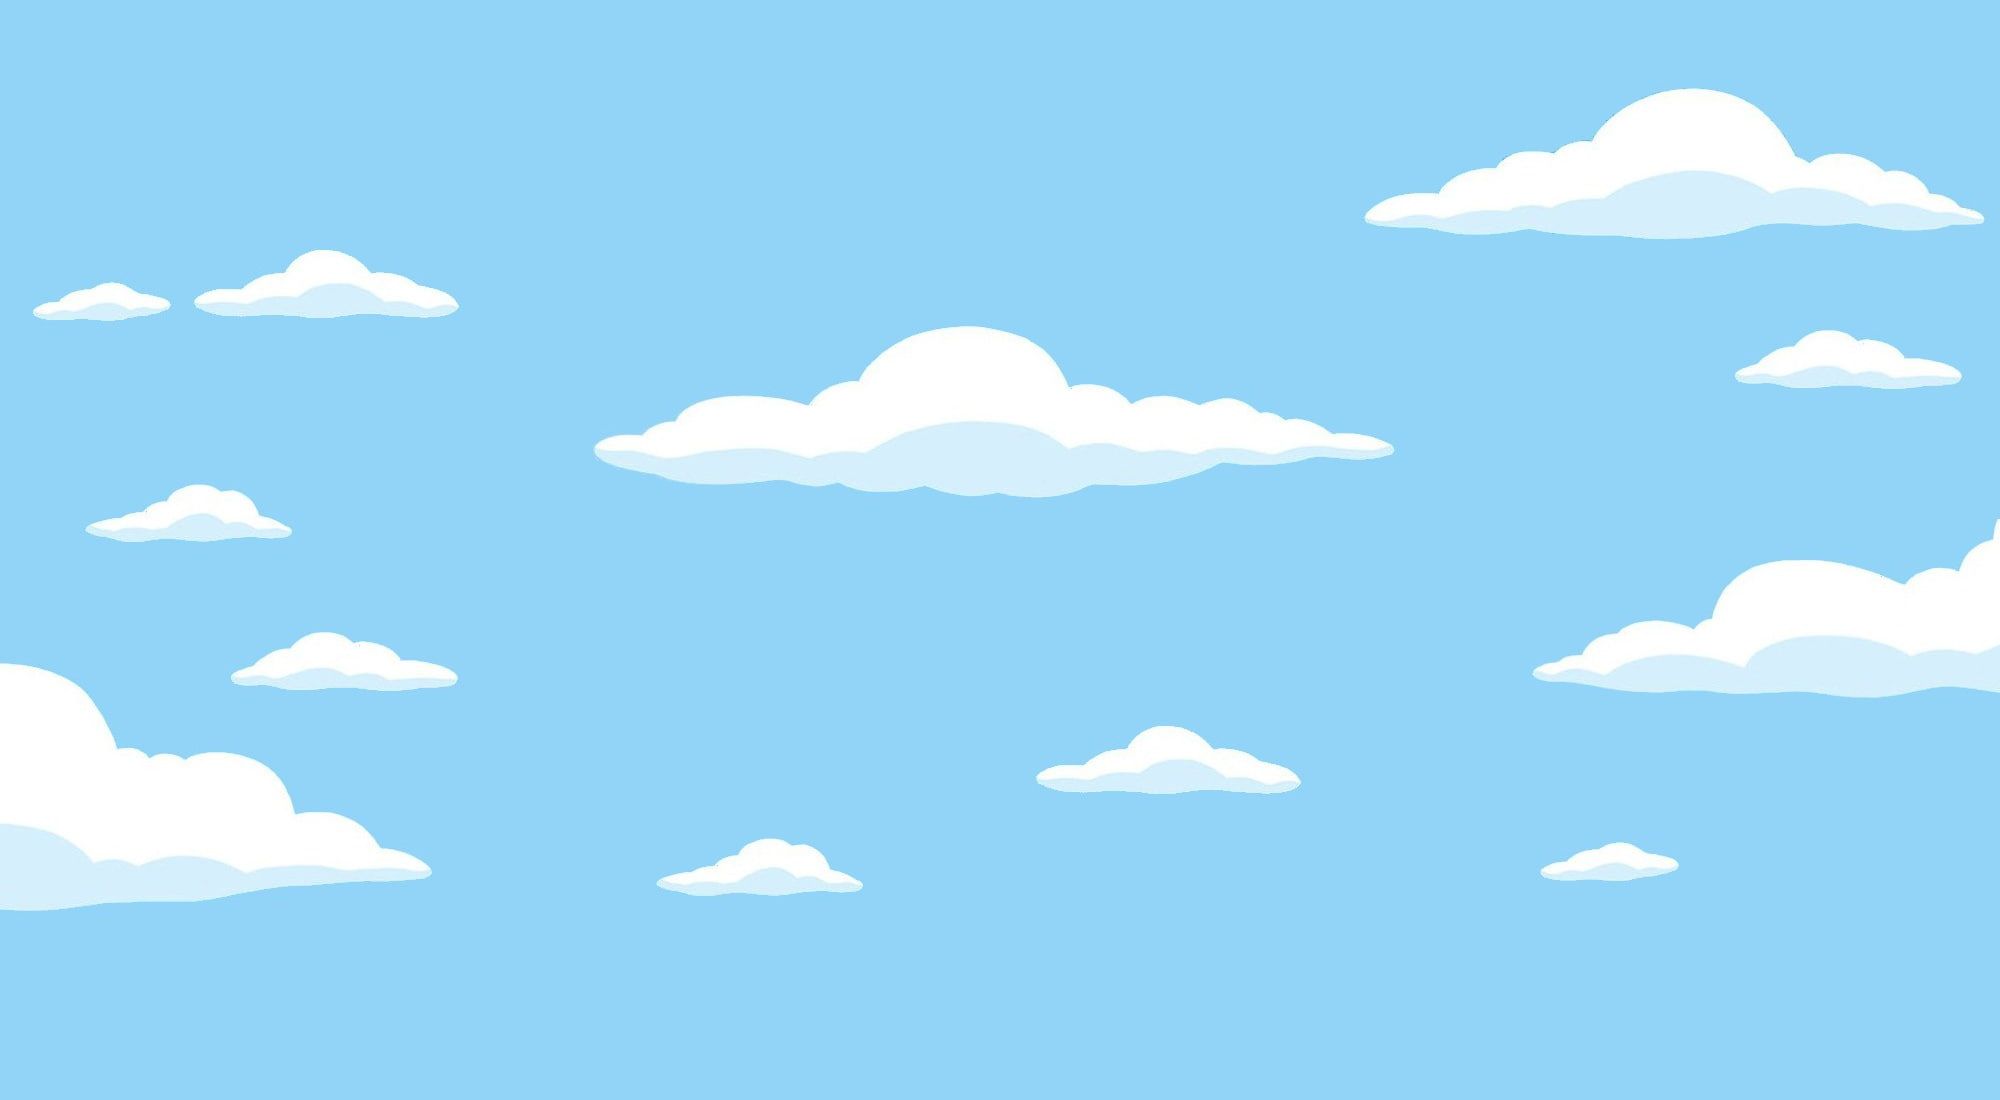 The Simpsons Clouds Wallpaper - KibrisPDR